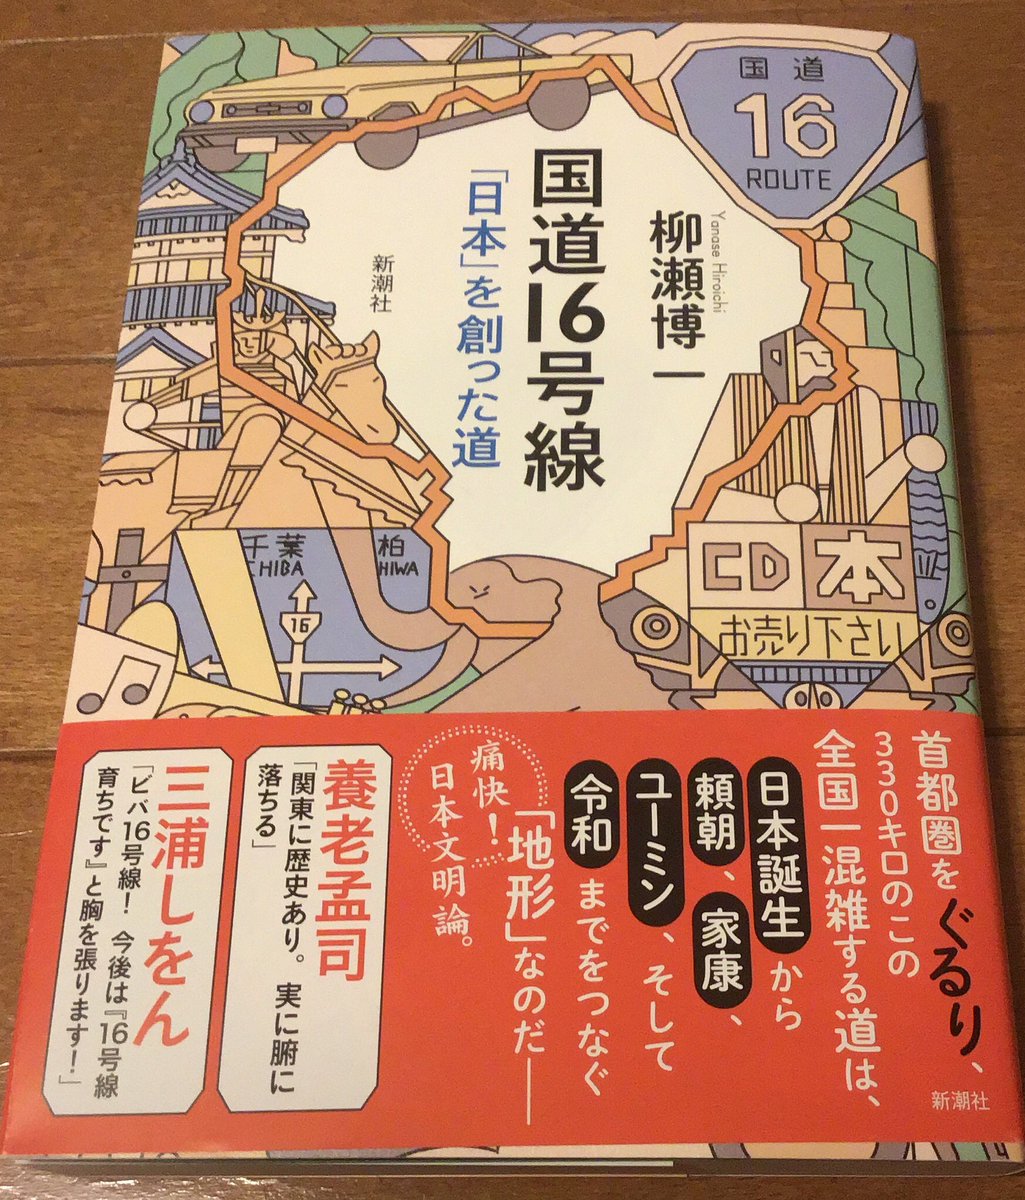 柳瀬先生の『国道16号線「日本」を創った道』がAmazonから到着。十数年前の「草食男子」打ち合わせの頃からお話は(強制的に)聞いていたので書籍の形に纏まって謎の感慨があります。こんどサイン下さい。 